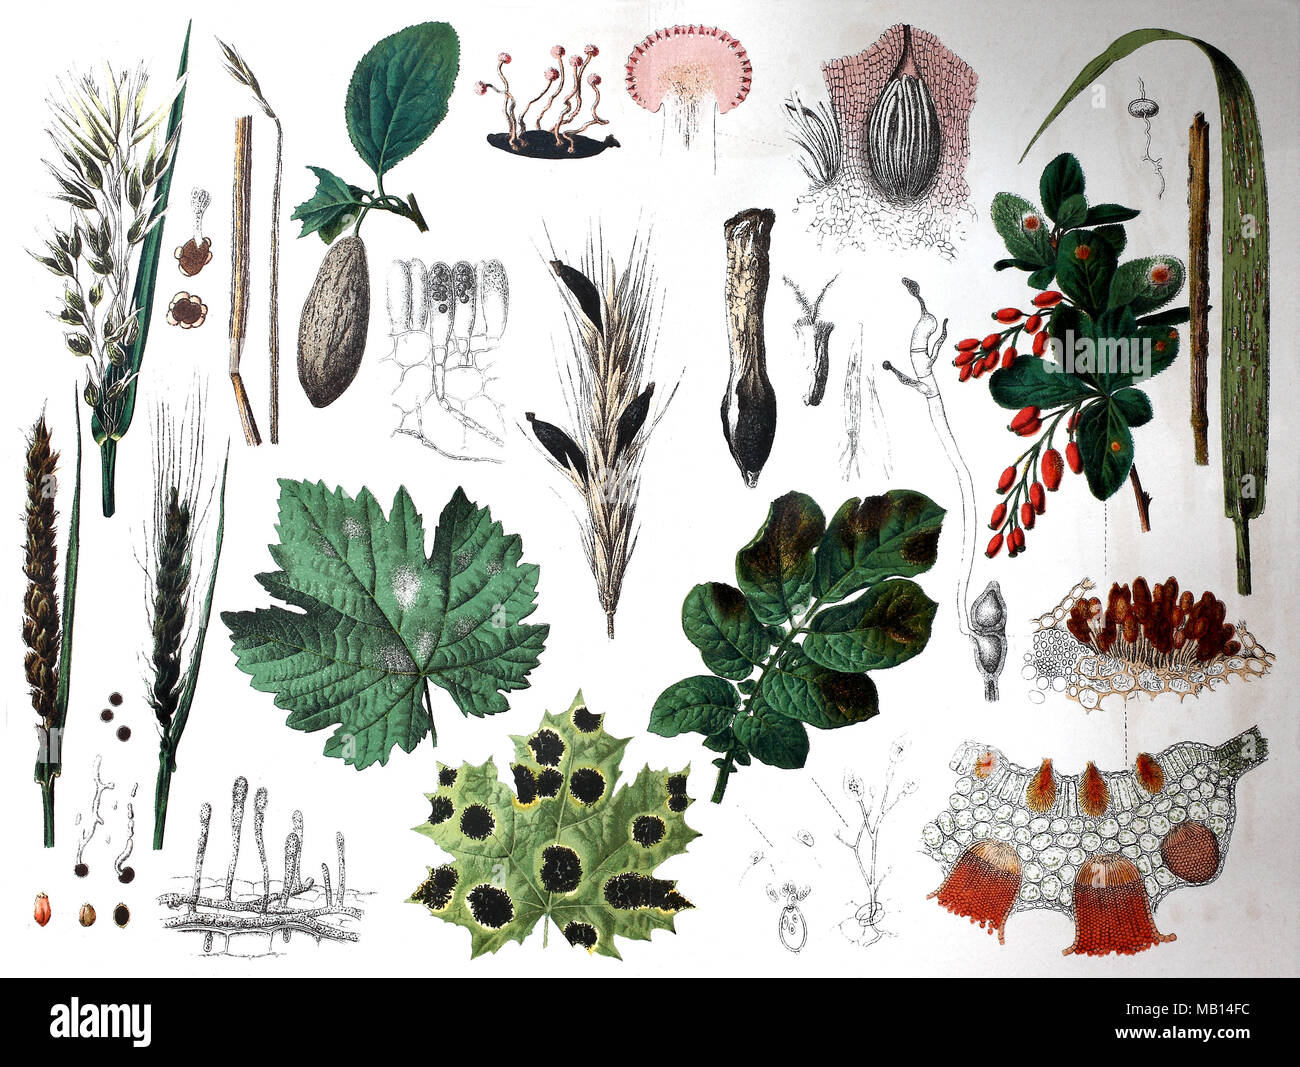 Ãoebersicht Ã¼ber Pflanzenkrankheiten, 1895, Enquête sur les maladies des plantes, amélioration numérique reproduction d'une estampe originale de l'année 1895 Banque D'Images